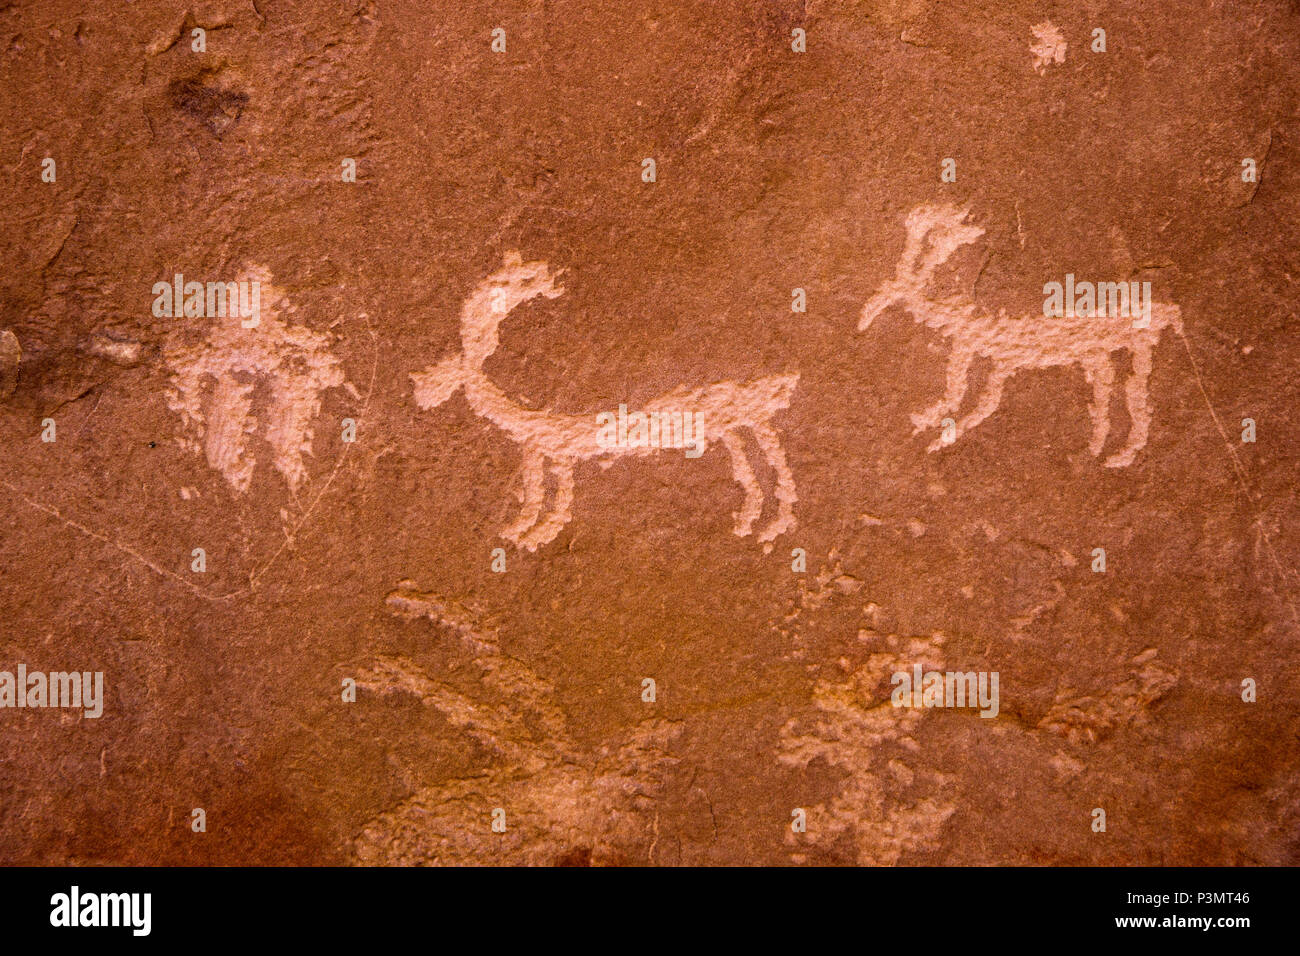 Preistorica dei Pueblo ancestrali incisioni rupestri in San Juan County nel sudest dell'Utah, Stati Uniti Foto Stock